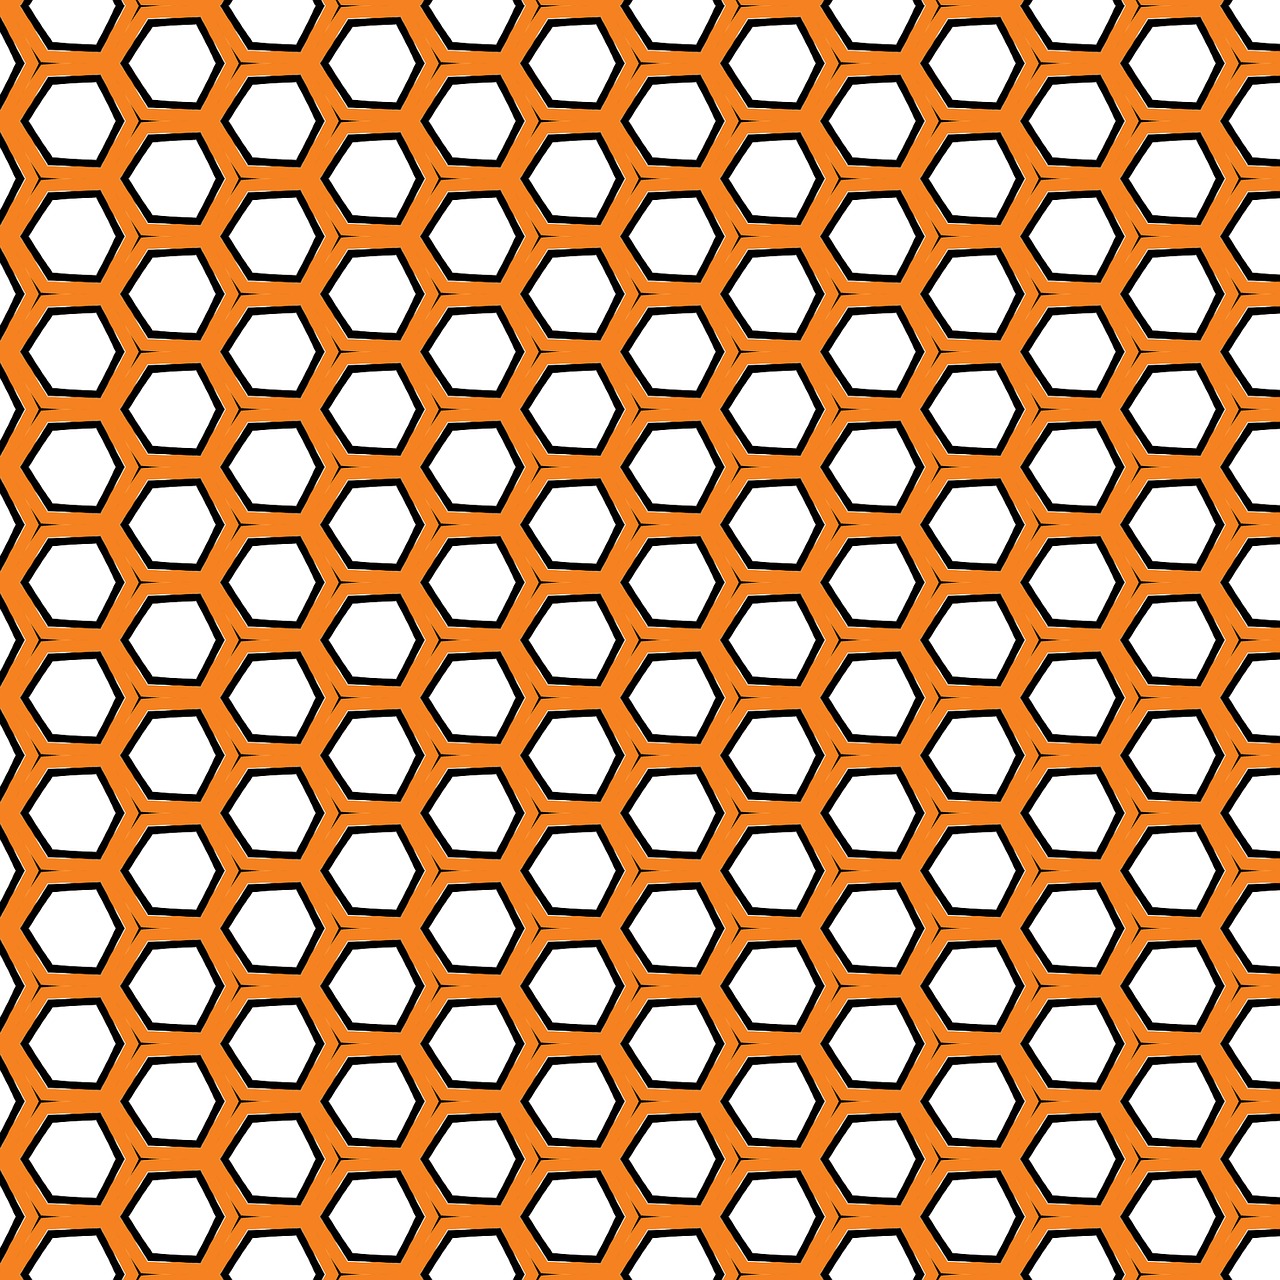 honeycomb honeycomb pattern pattern free photo